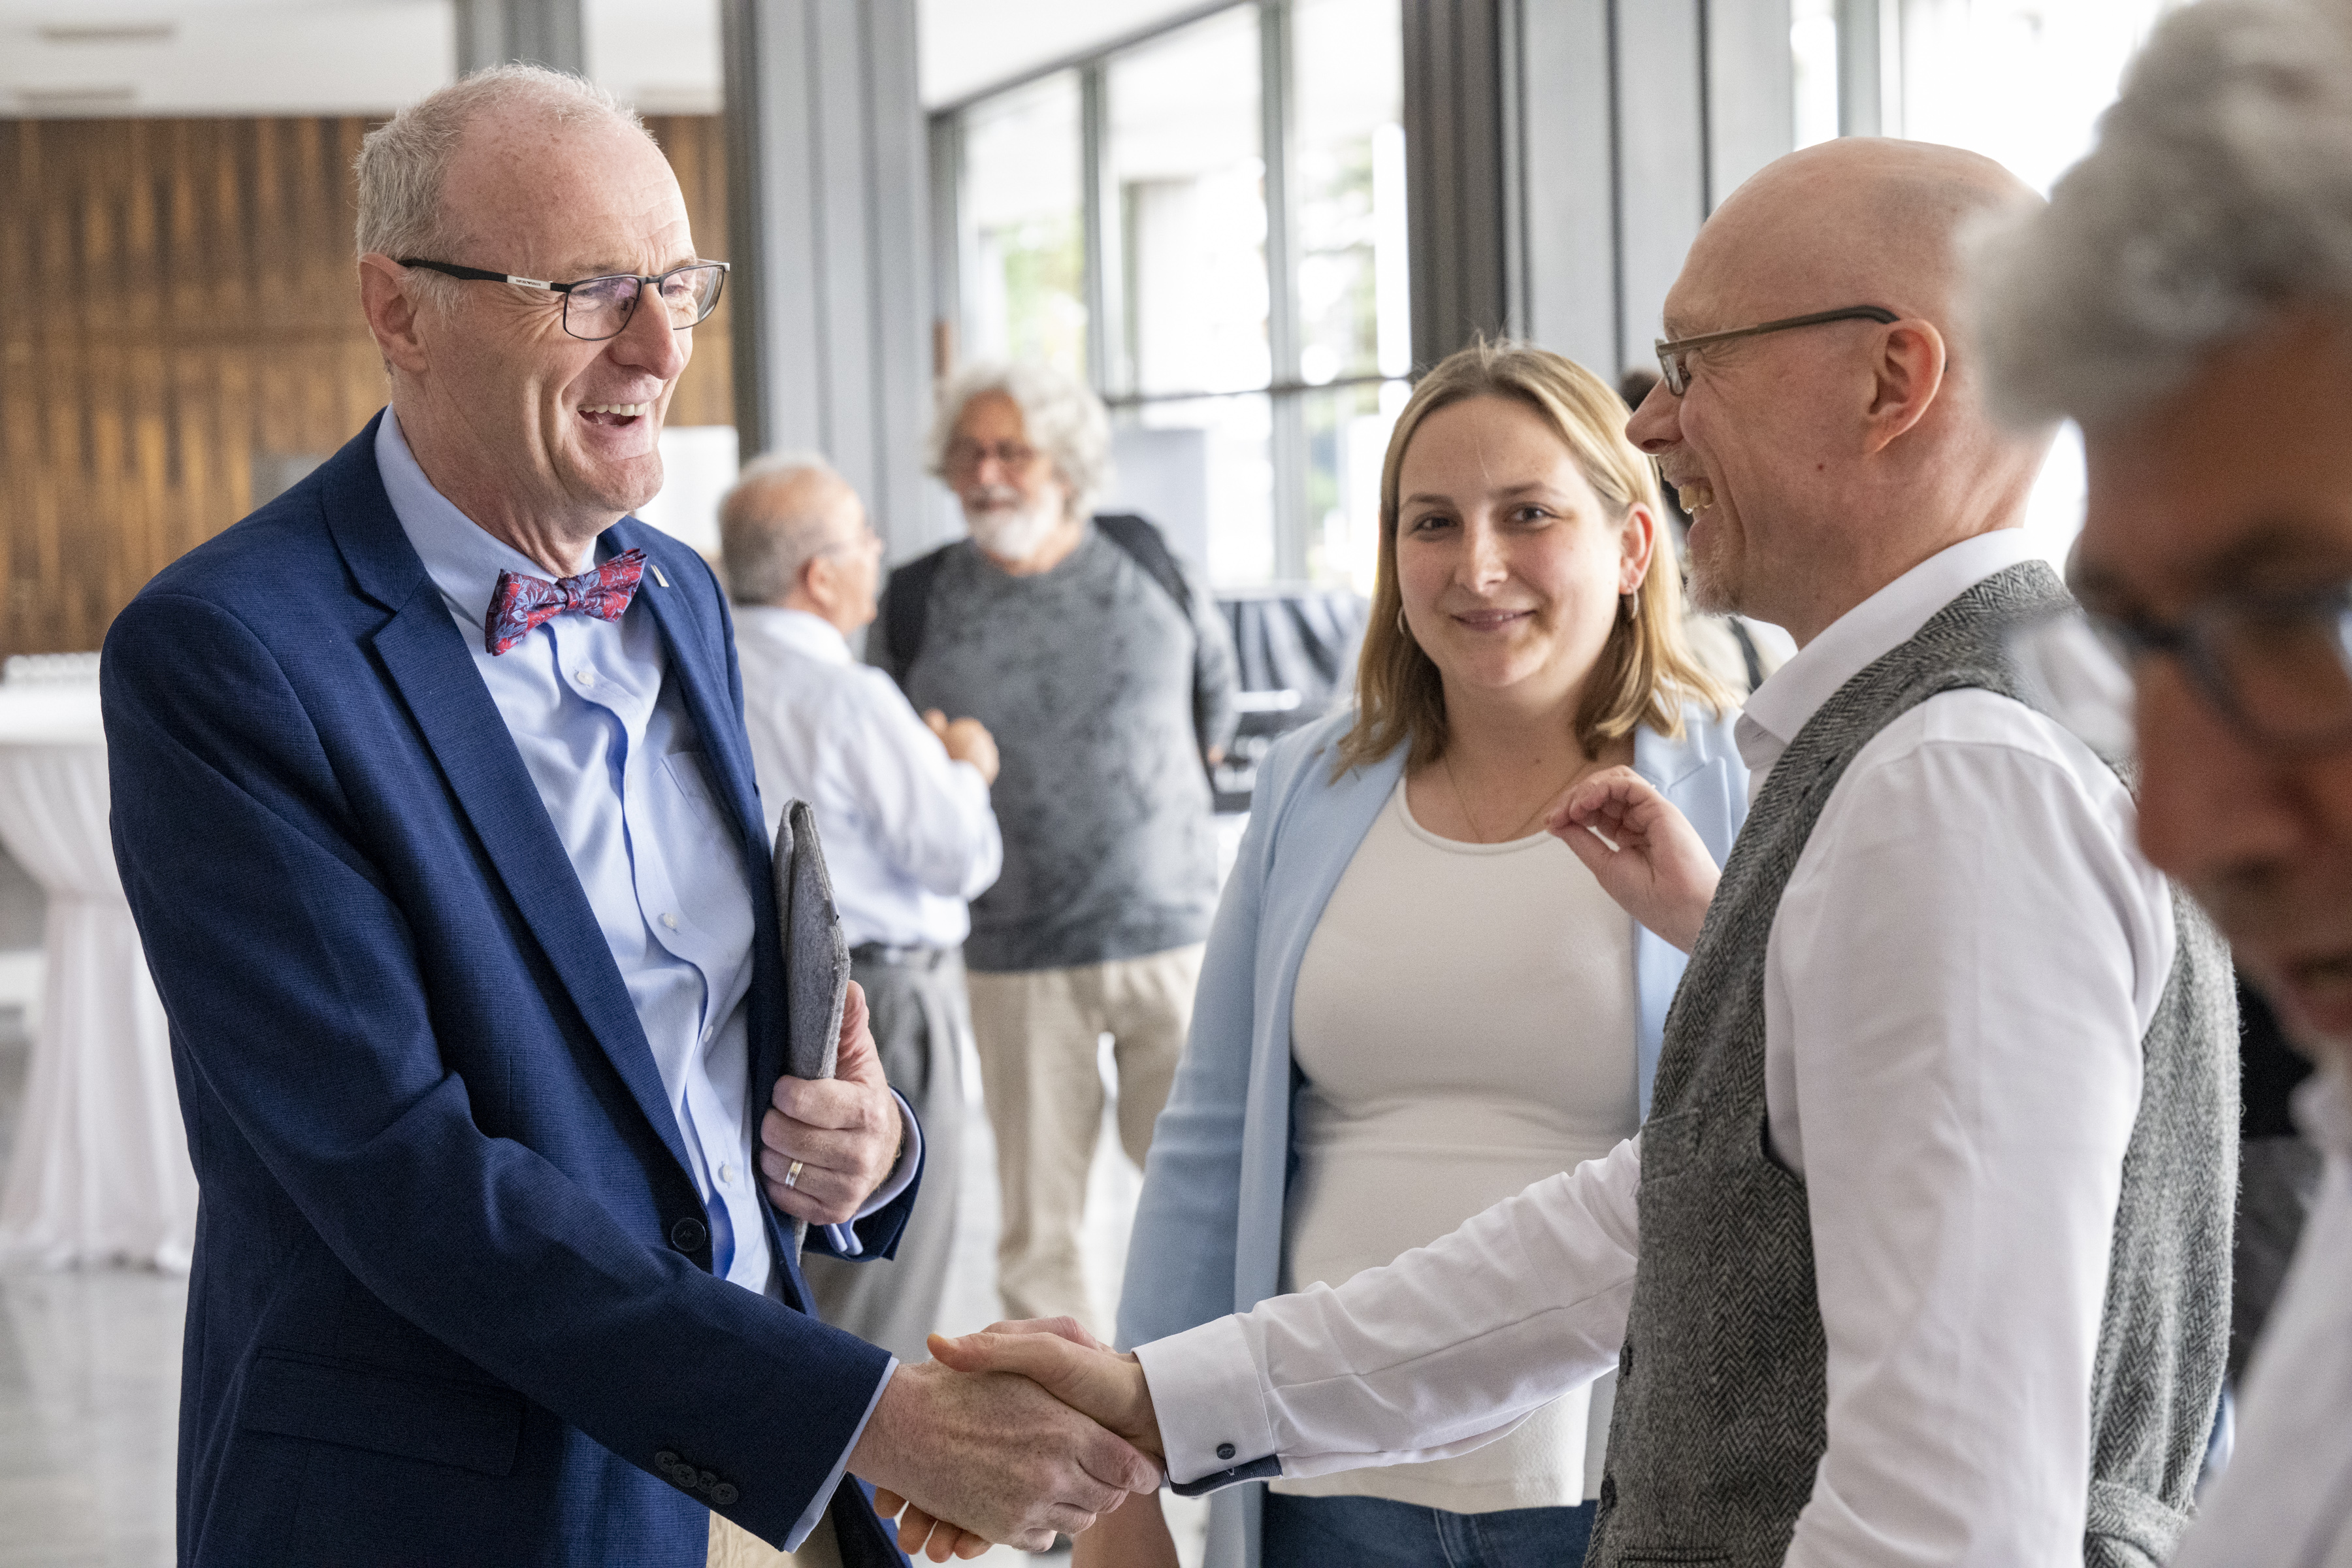 Dr. Ralf Heinen (Mayor of the City of Cologne) congratulates DOMiD board member Jens Grimmelijkhuizen. Photo: Uwe Weiser / LVR